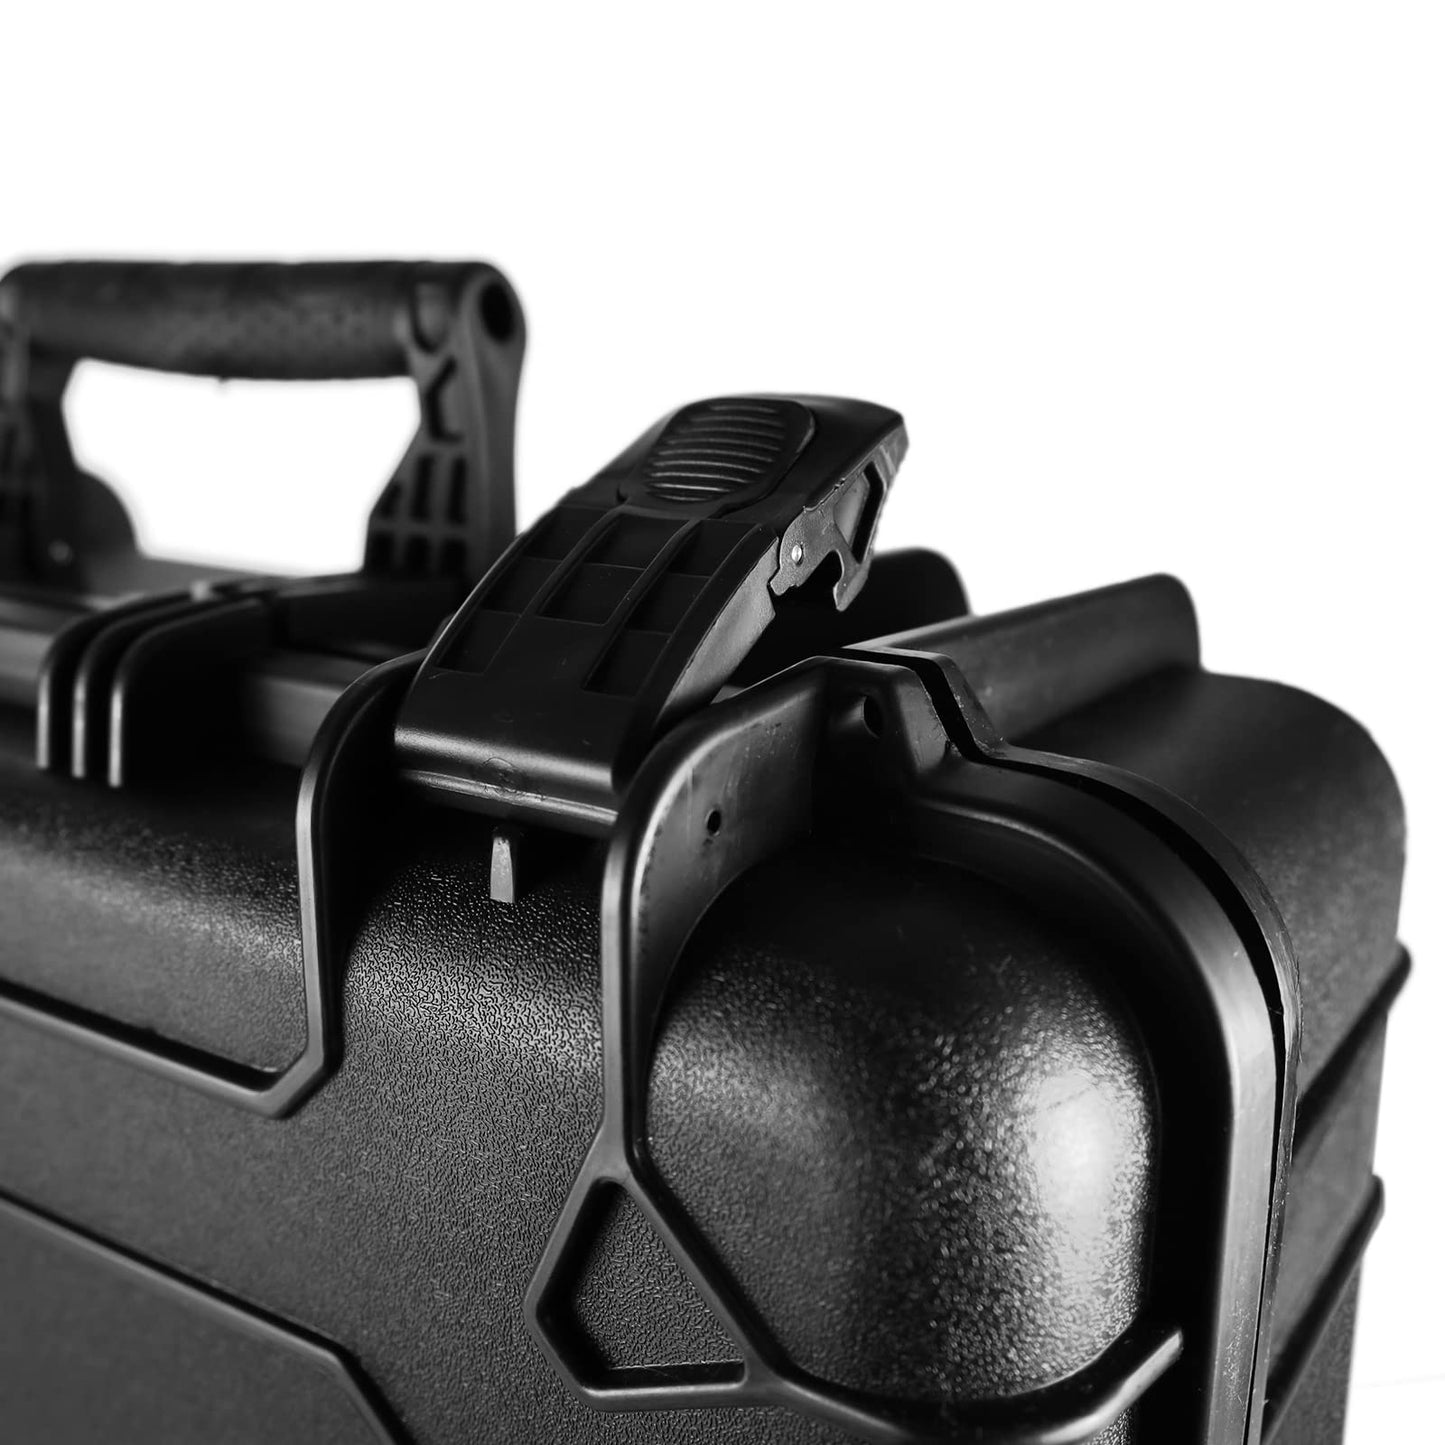 Matterport Small Hard Camera Case for Pro3 3D Lidar Digital Camera Case